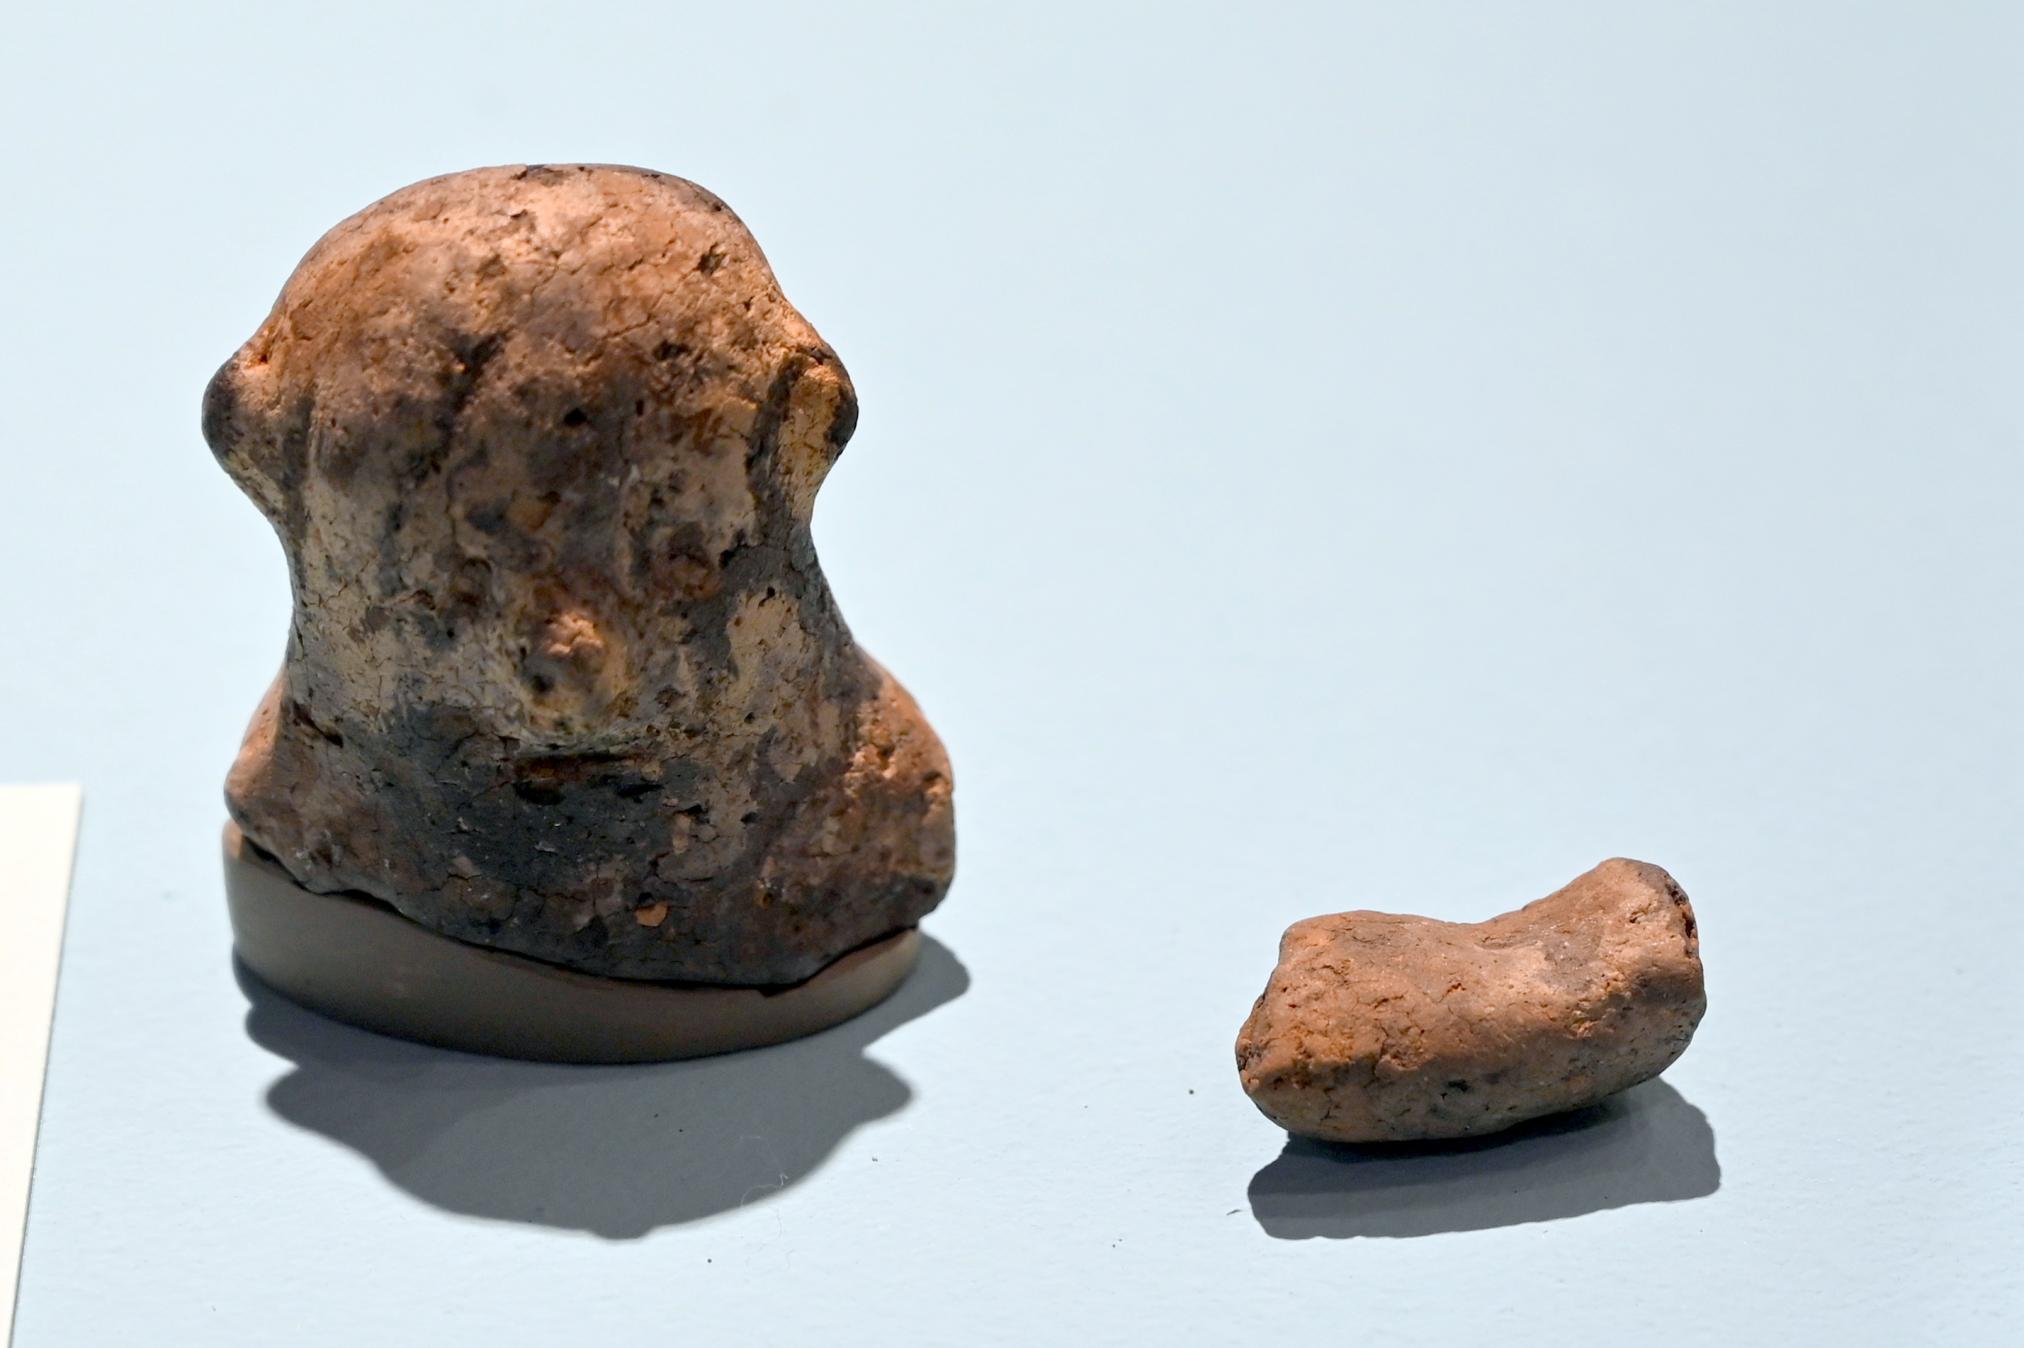 Bandkeramisches Idol, Neolithikum (Jungsteinzeit), 5500 - 1700 v. Chr., 5090 - 5050 v. Chr., Bild 1/2